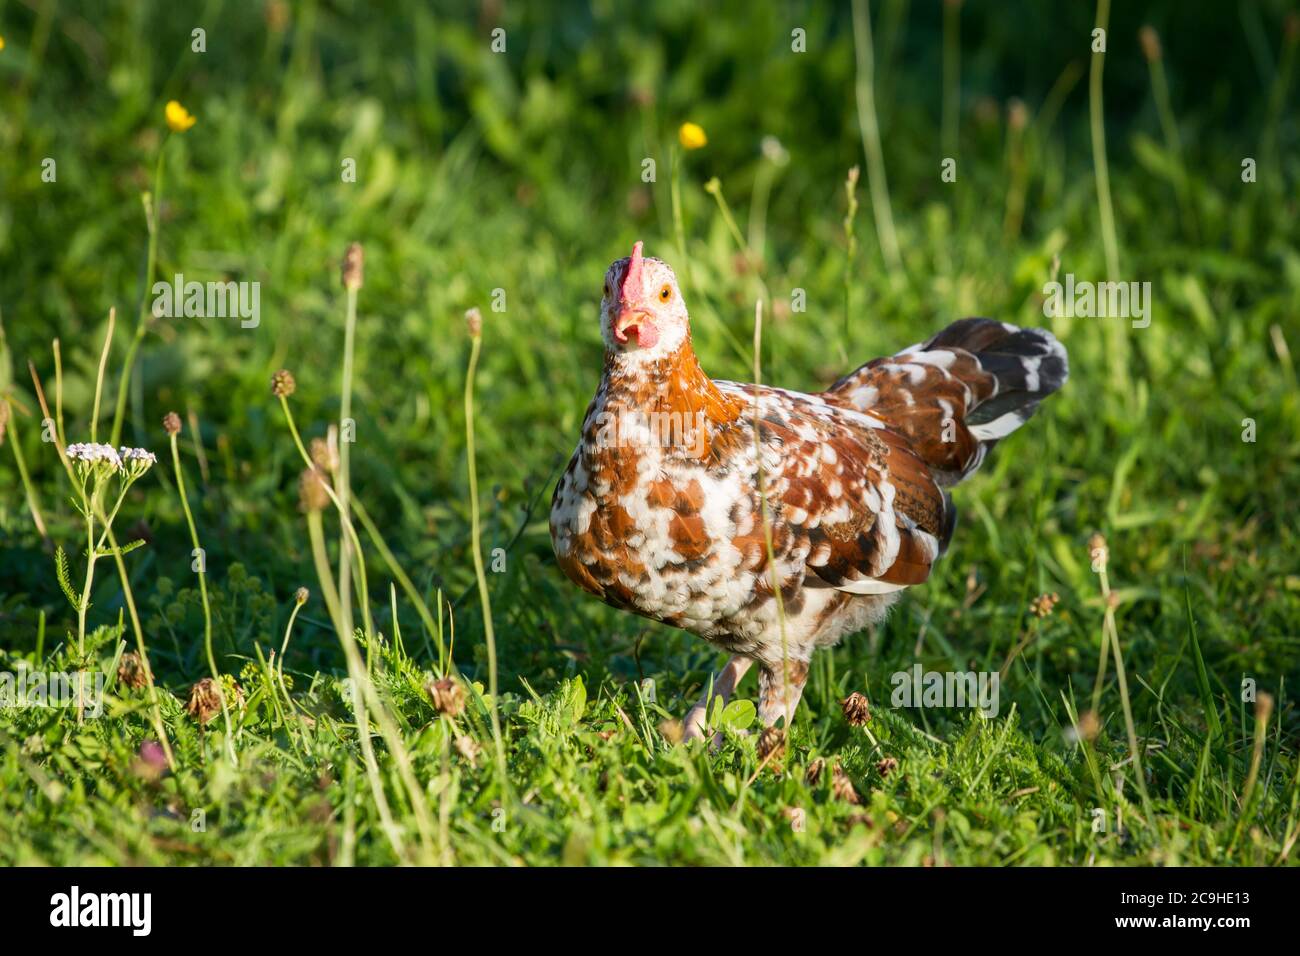 Jeune coq de poulet coloré de la race 'Stoapiperl', une race en voie de disparition originaire d'Autriche Banque D'Images